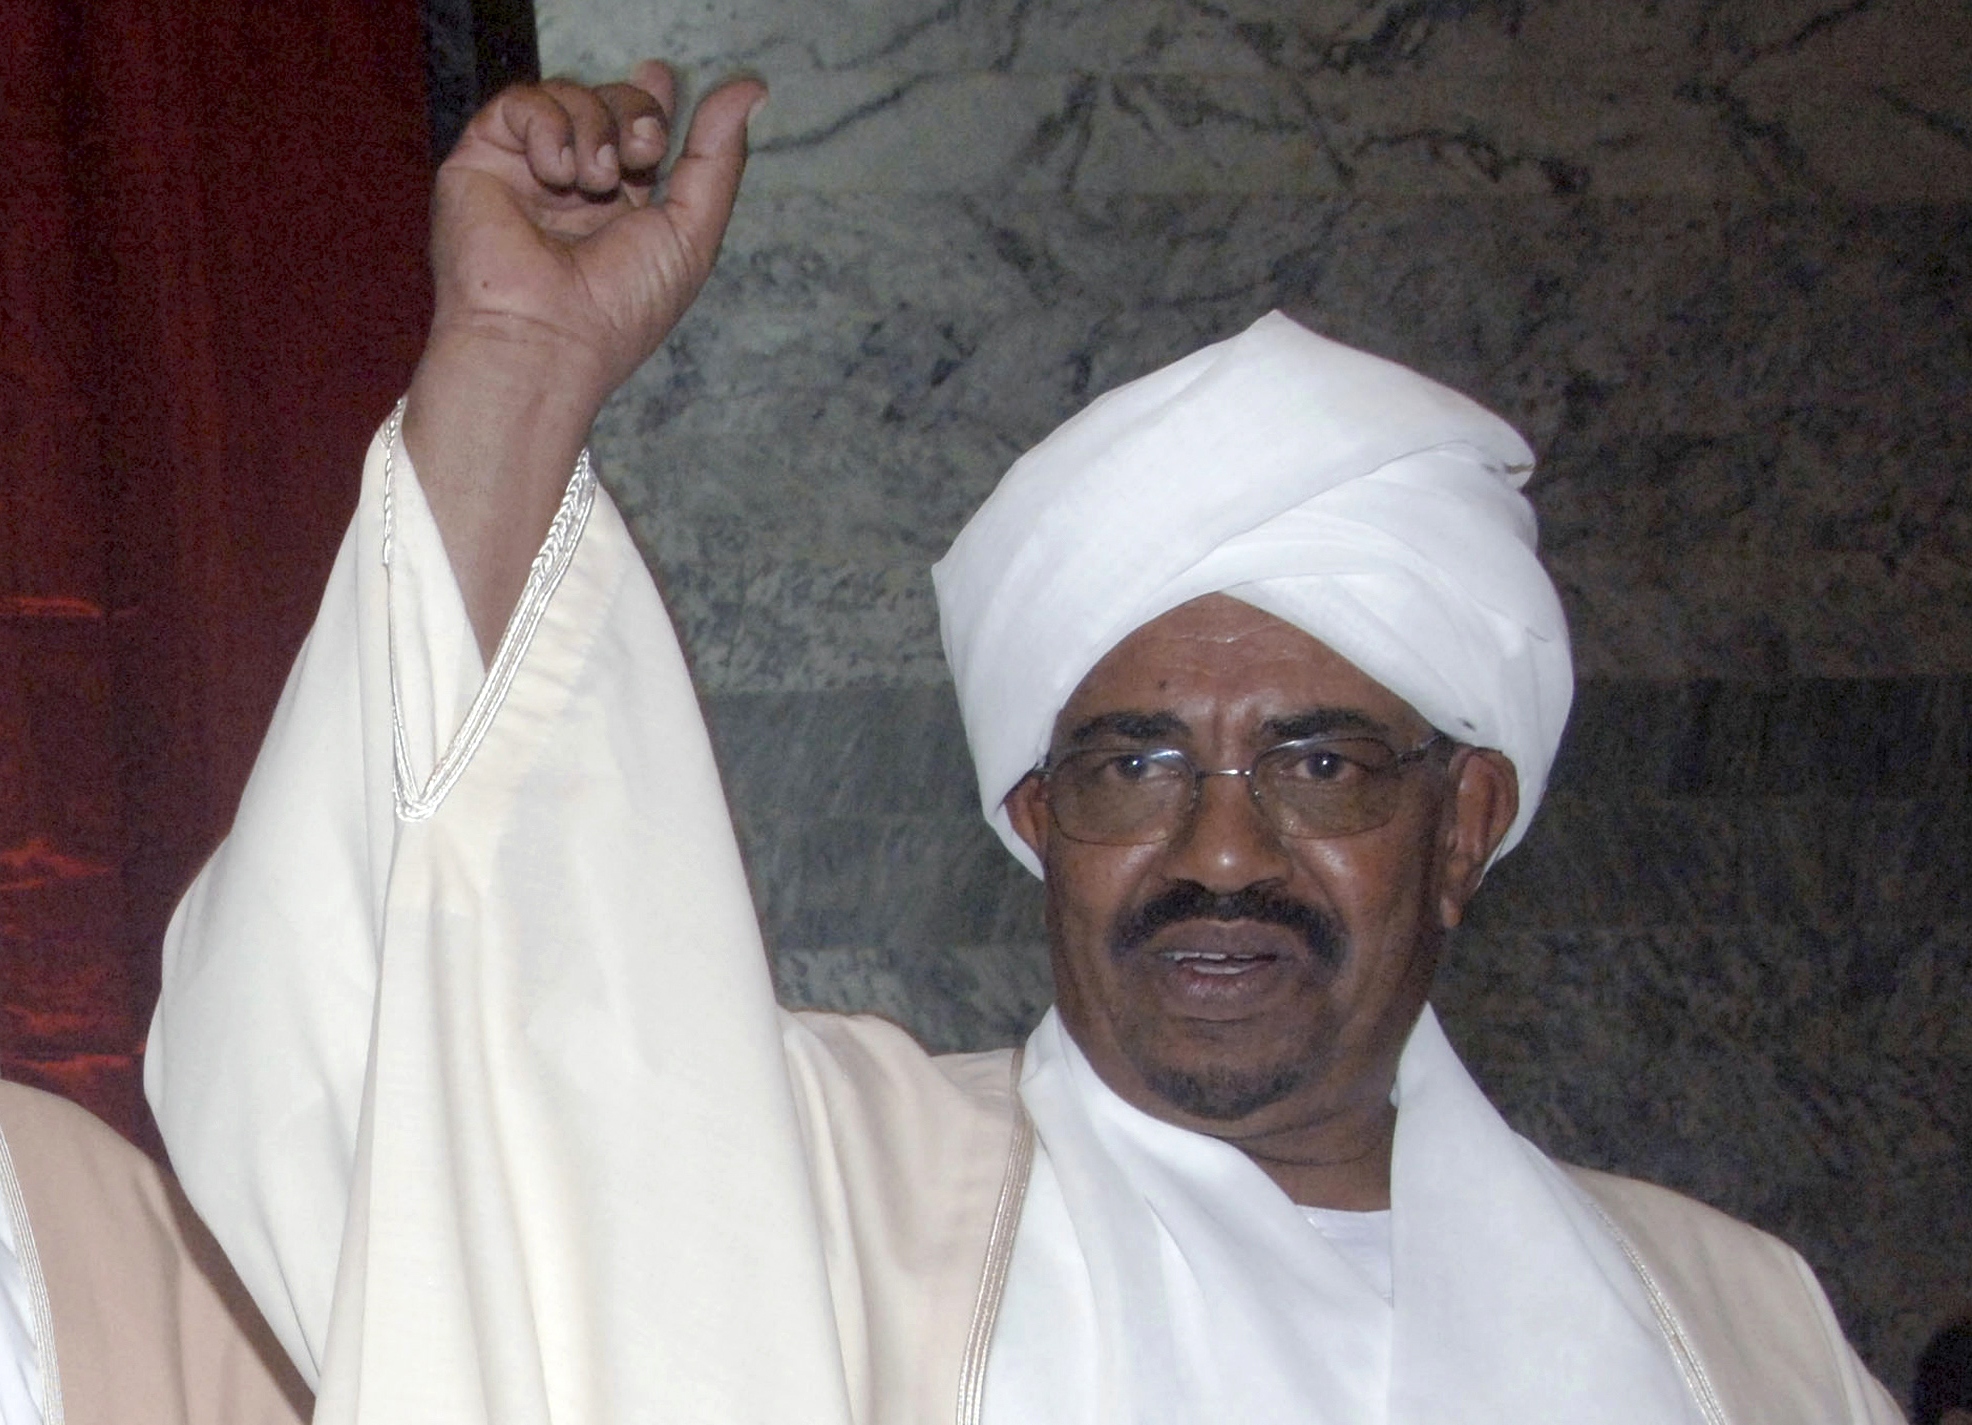 Omar al-Bashir - President i Sudan sedan 1993. Han kom dock till makten redan 1989 efter en militärkupp då premiärminister Sadiq al-Mahdis störtades utan att blod spilldes. Al-Bashir var mellan 1989 och 1993 president för Revolutionära kommandorådet för n